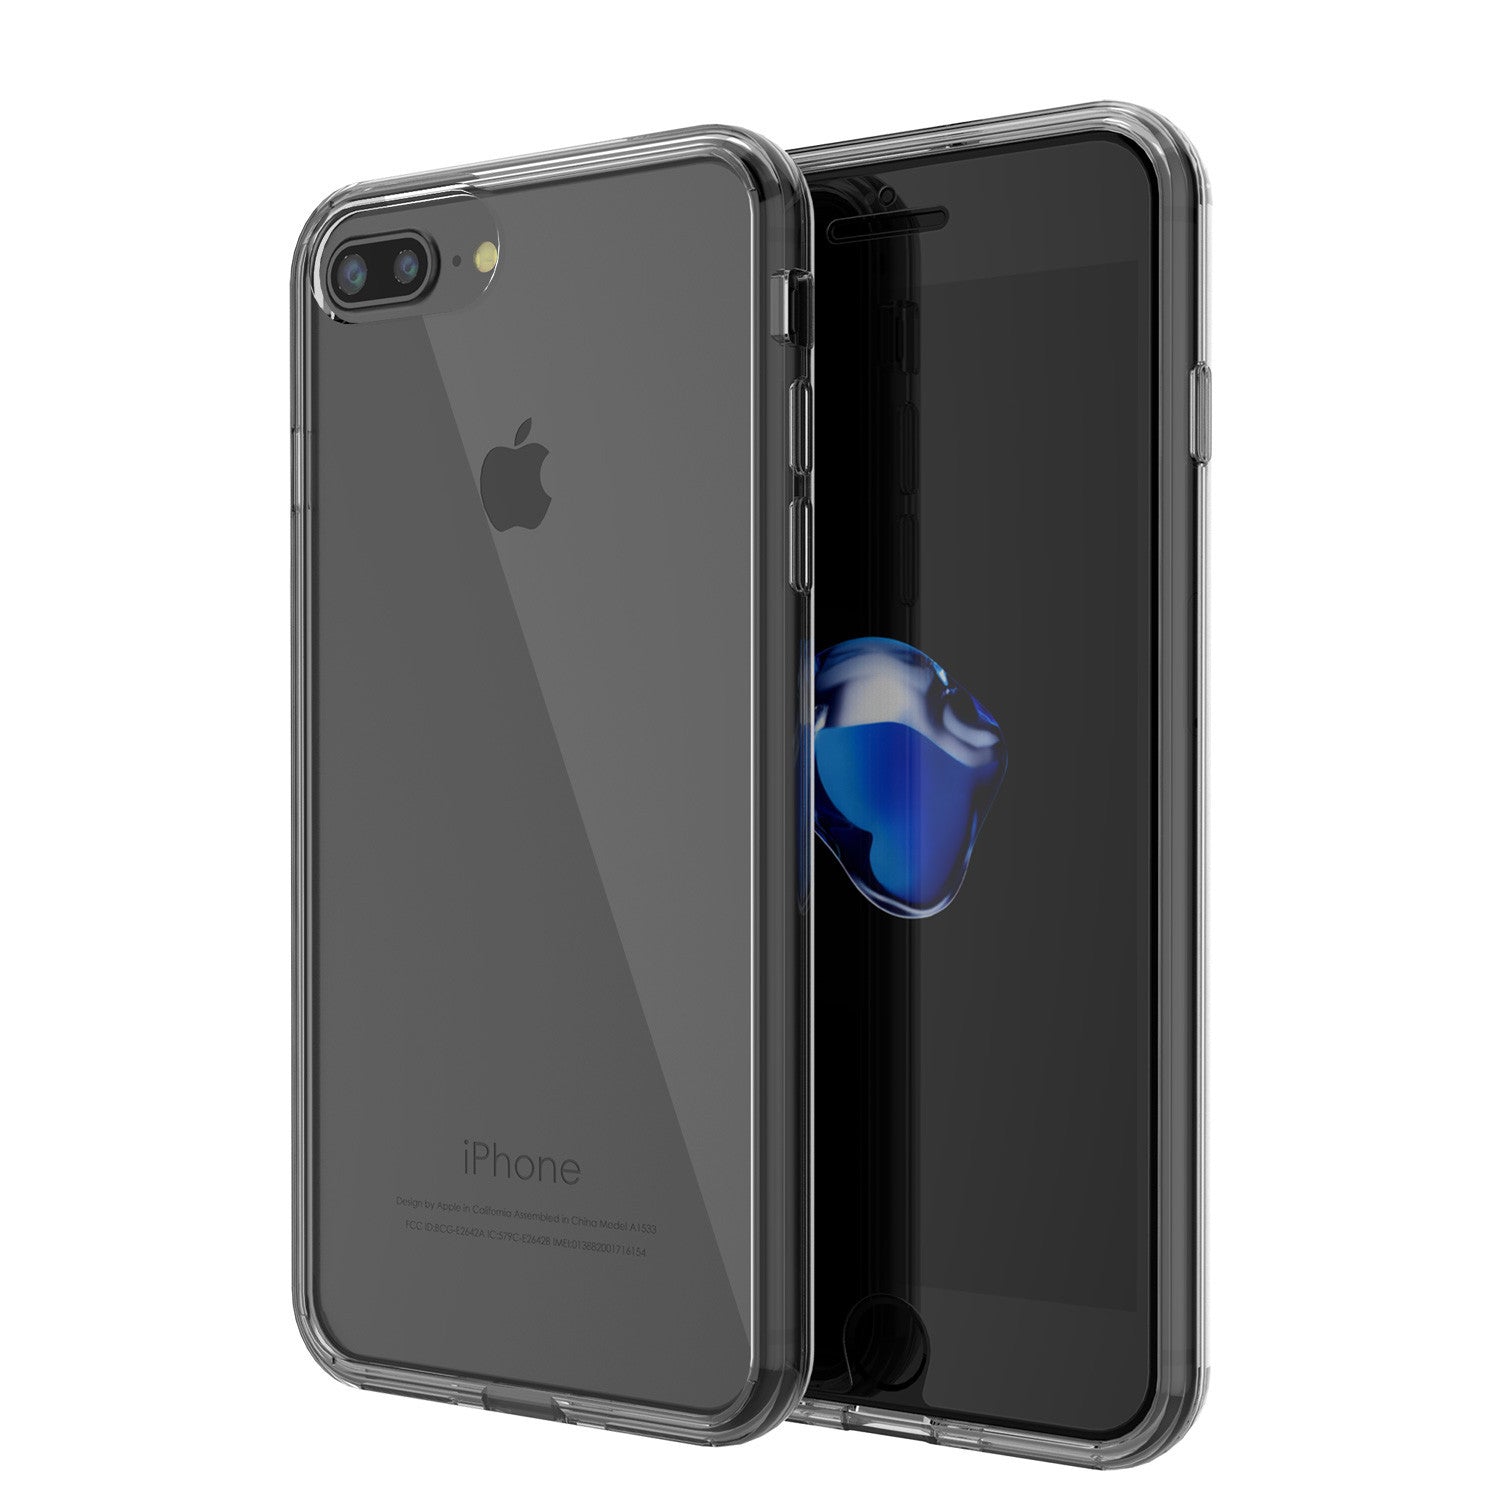 PUNKCASE - Lucid 2.0 Series Slick Frame Case for Apple IPhone 7 | Crystal Black